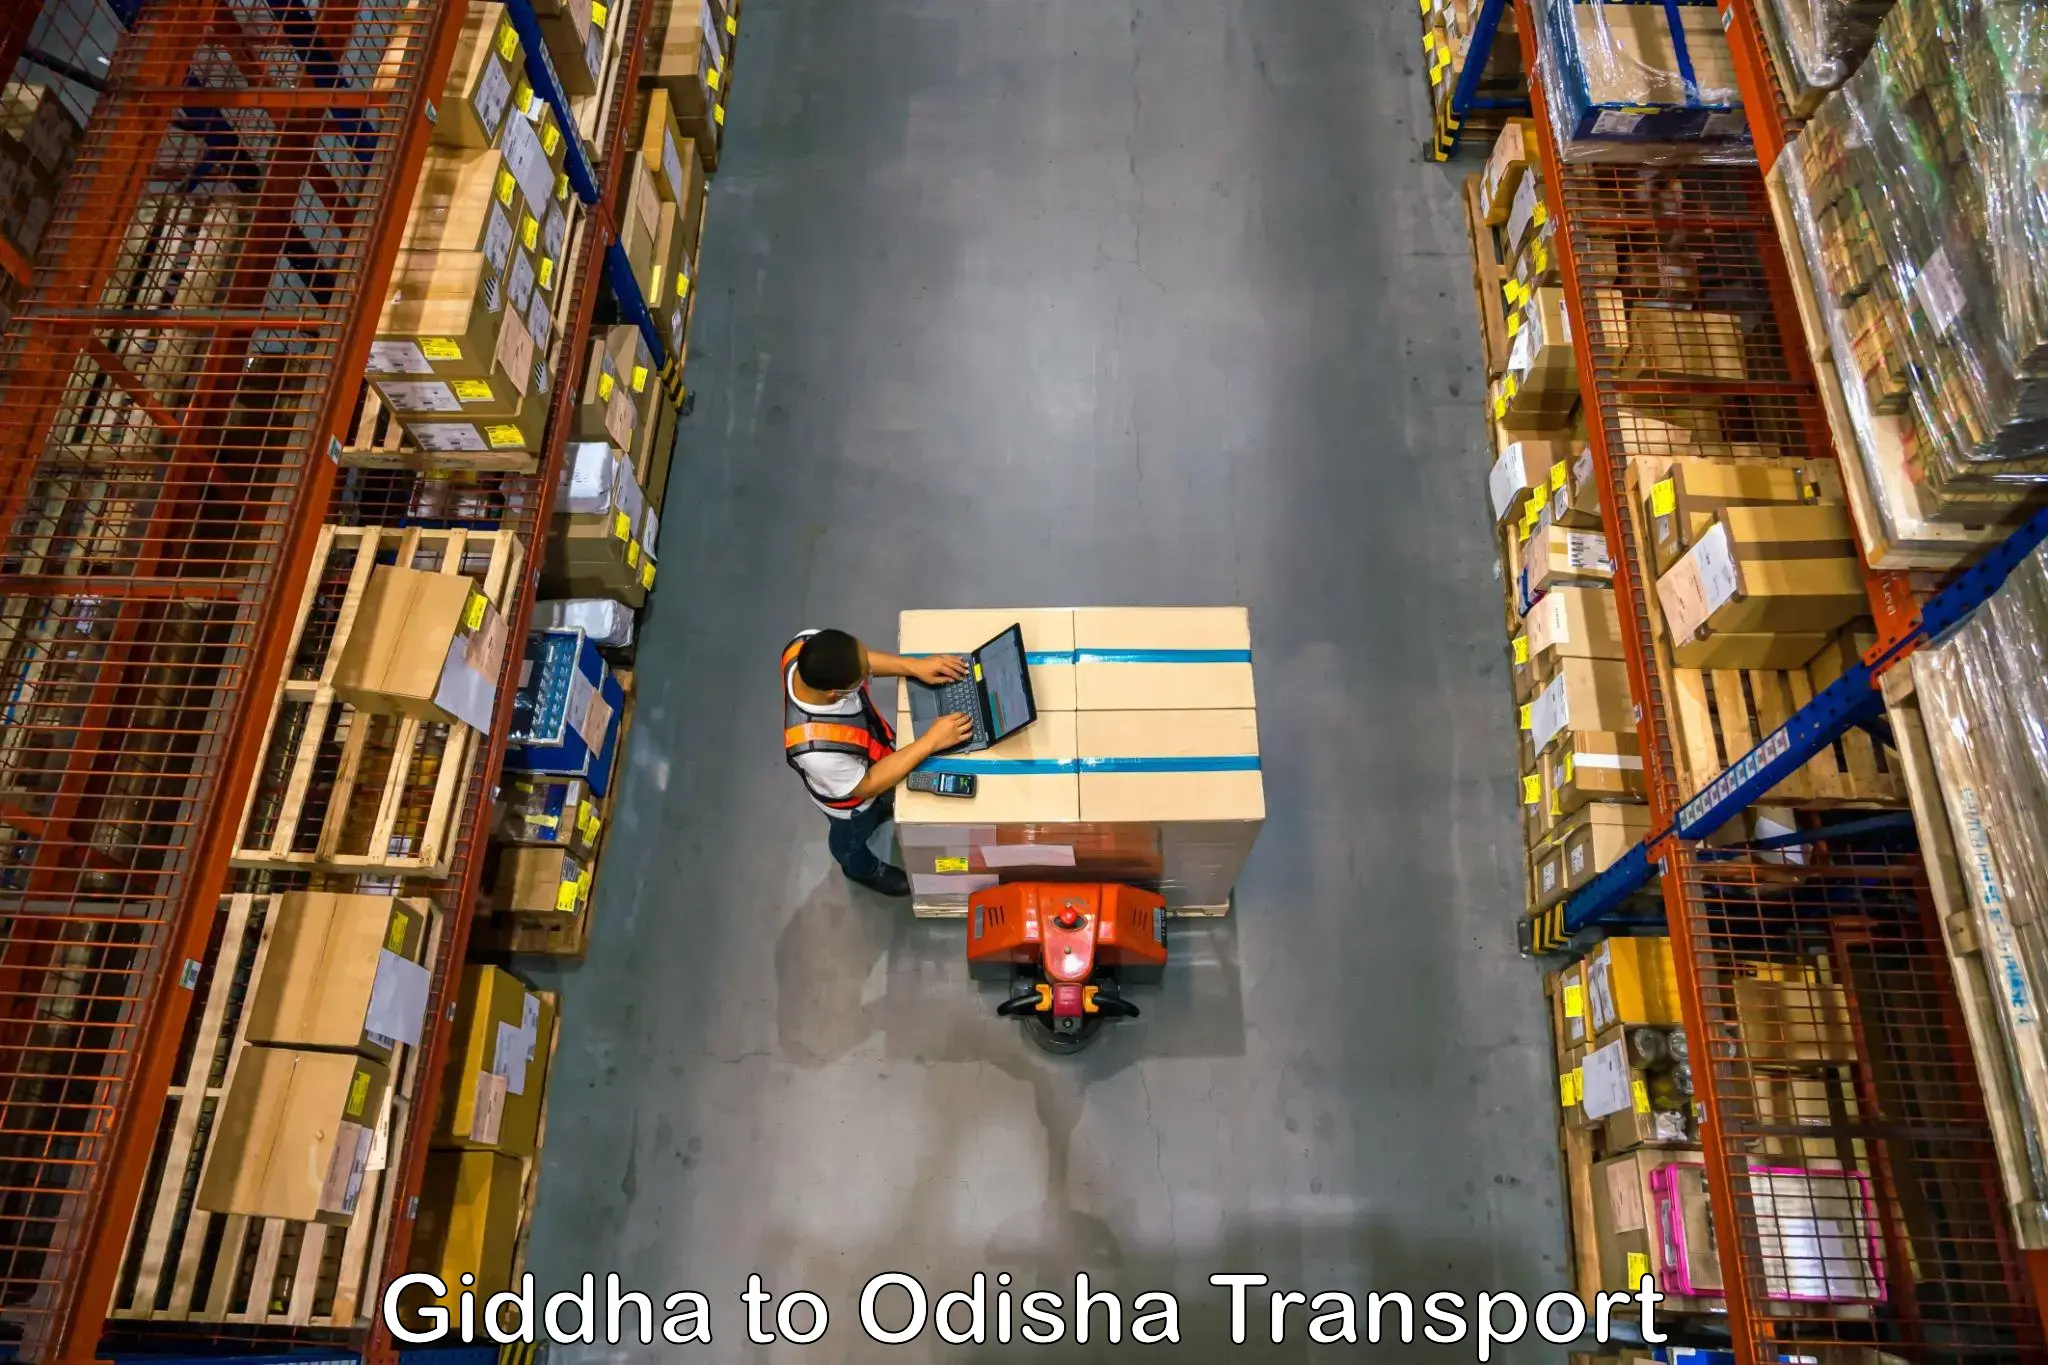 Furniture transport service Giddha to Kosagumuda